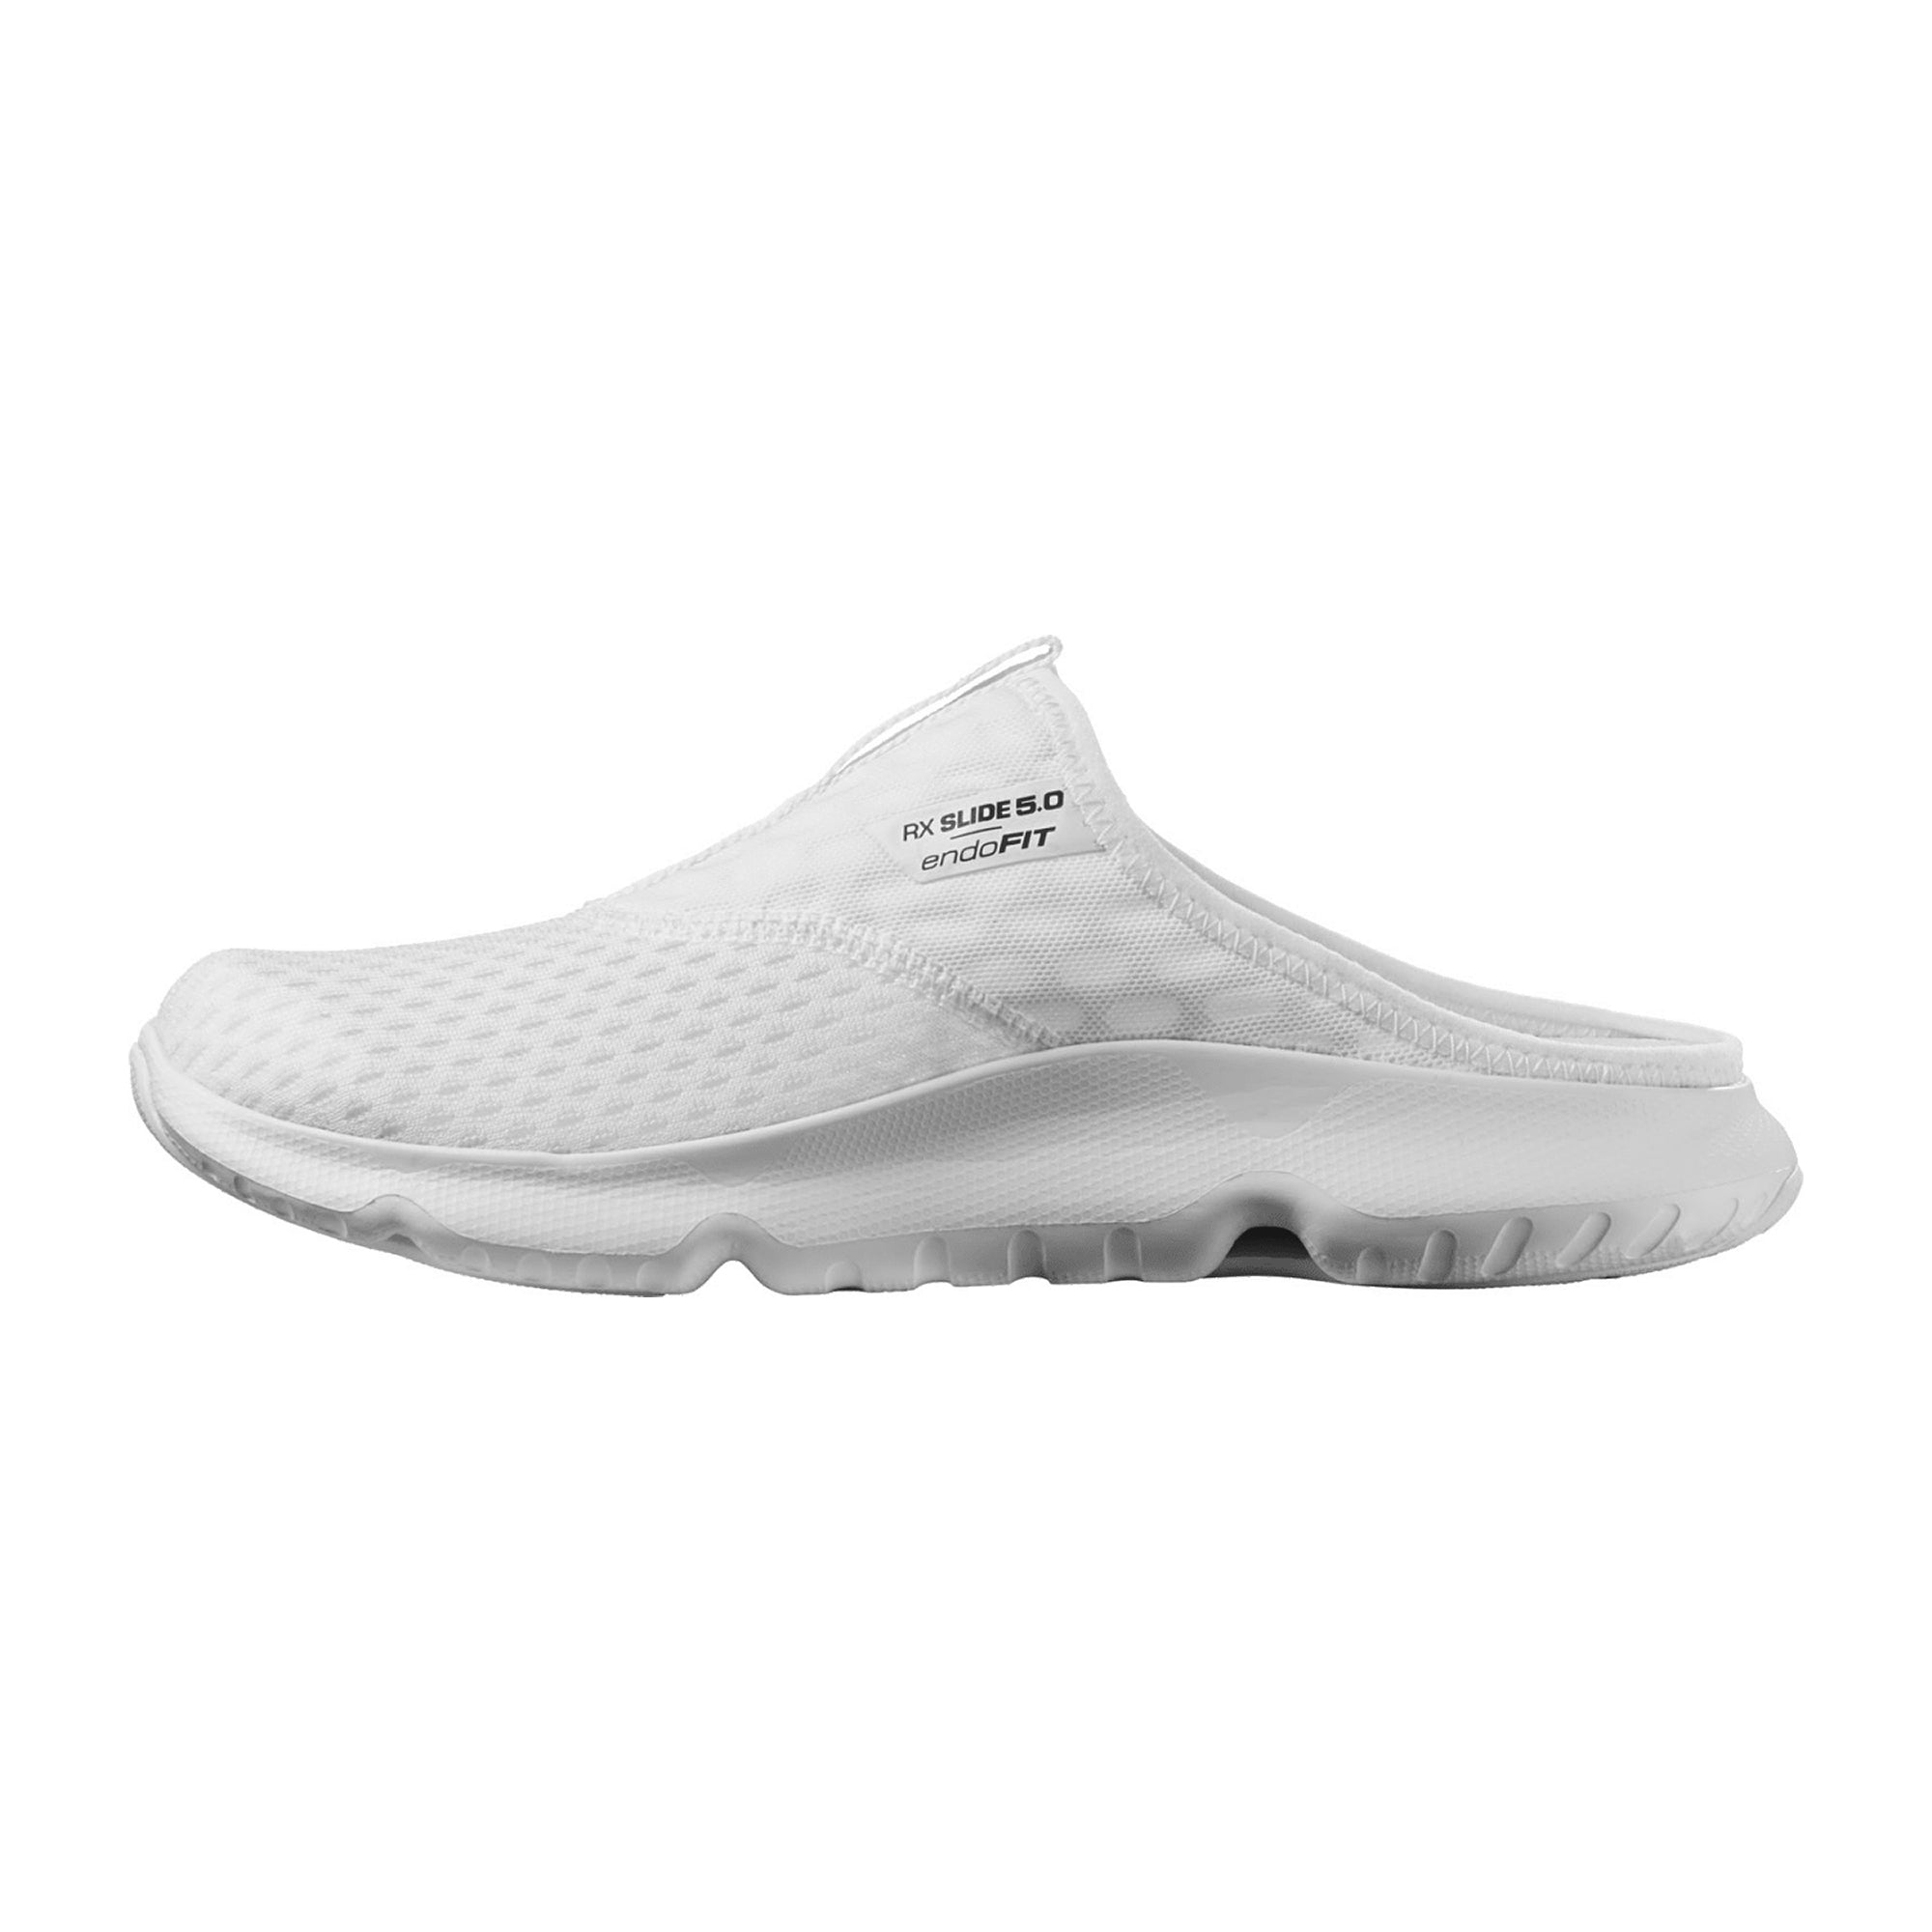 Salomon shoes REELAX SLIDE 5.0 W White/Wh for women, white